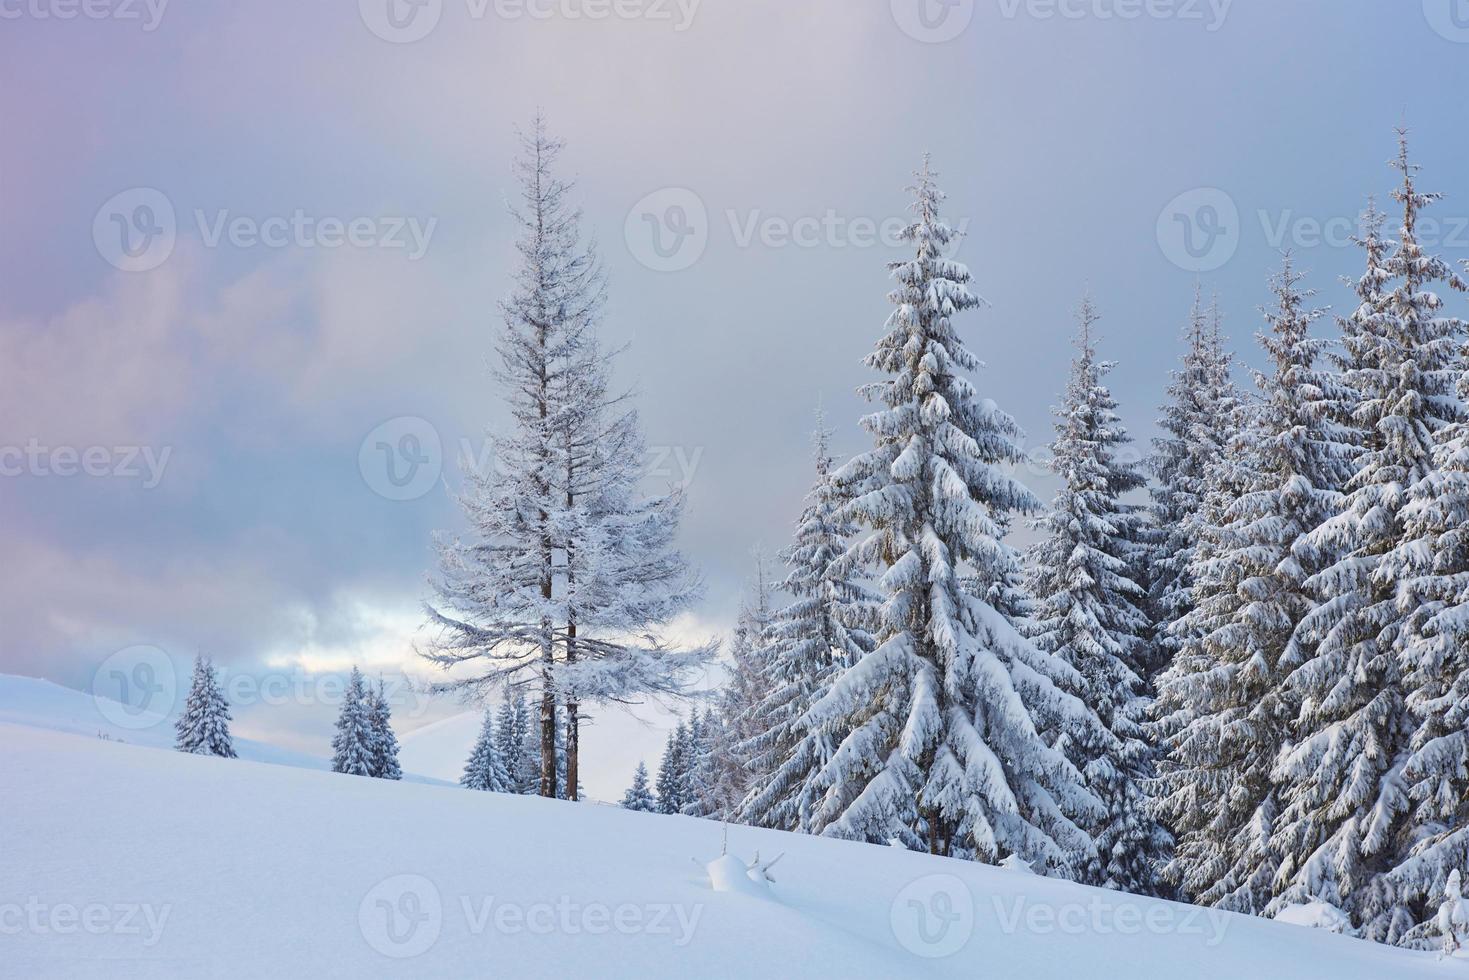 gran foto de invierno en las montañas de los Cárpatos con abetos cubiertos de nieve. colorida escena al aire libre, concepto de celebración de feliz año nuevo. foto post-procesada de estilo artístico